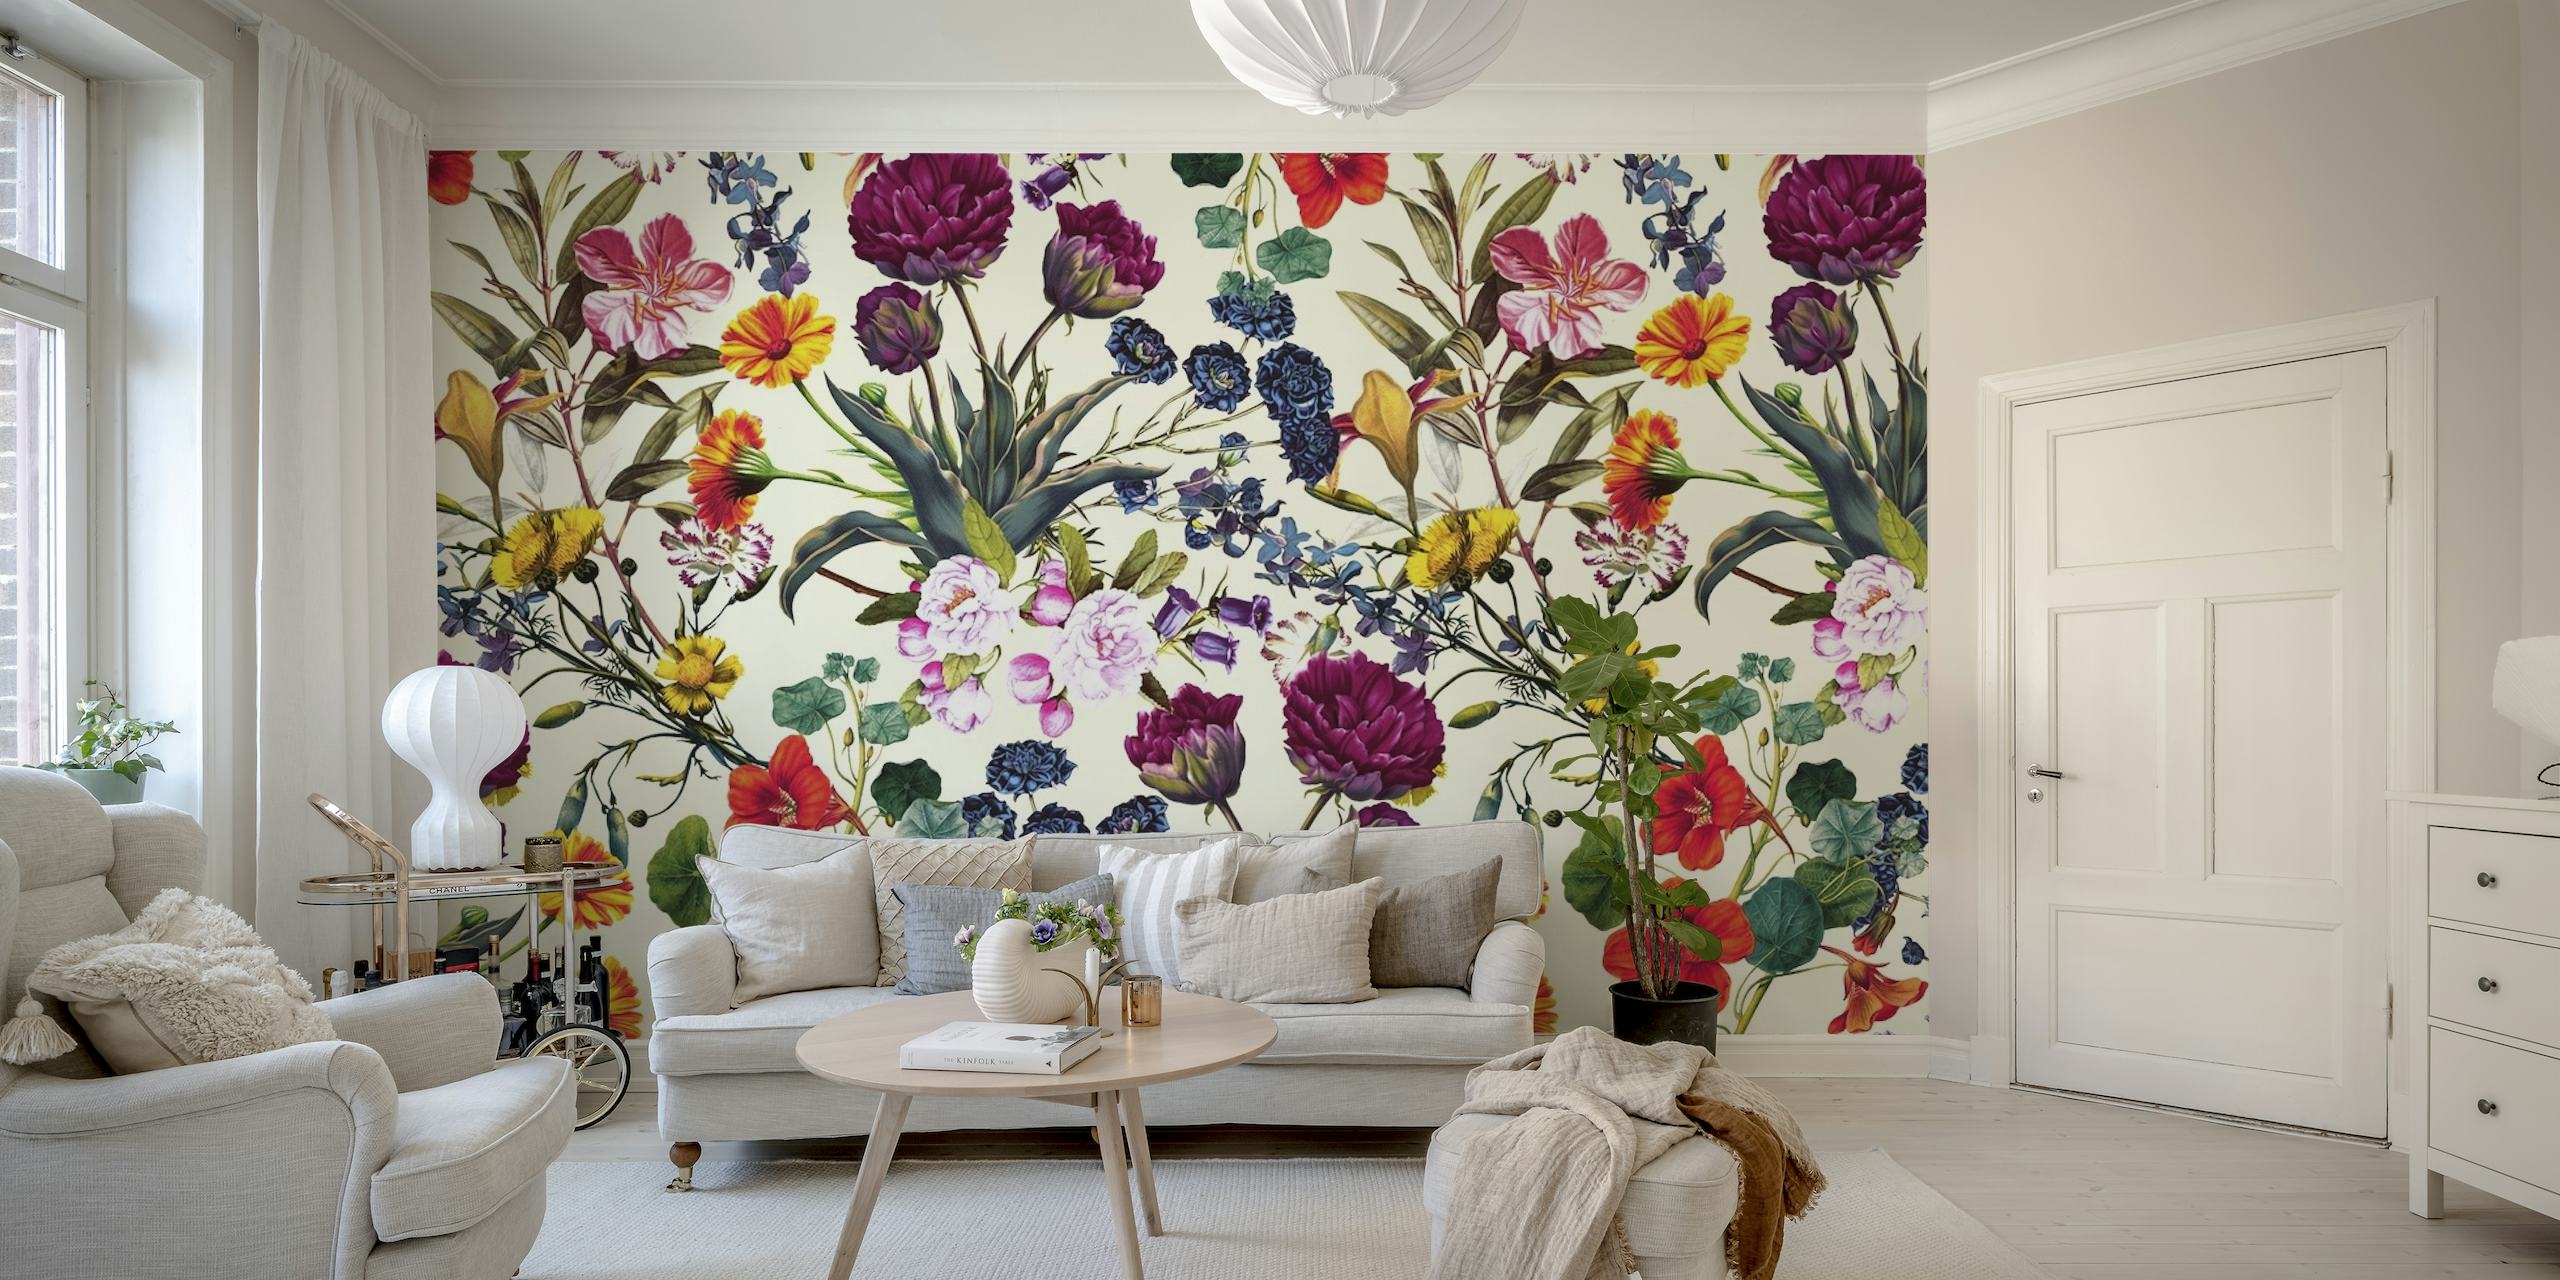 Colorido mural floral 'Magical Garden V' con varias flores en happywall.com